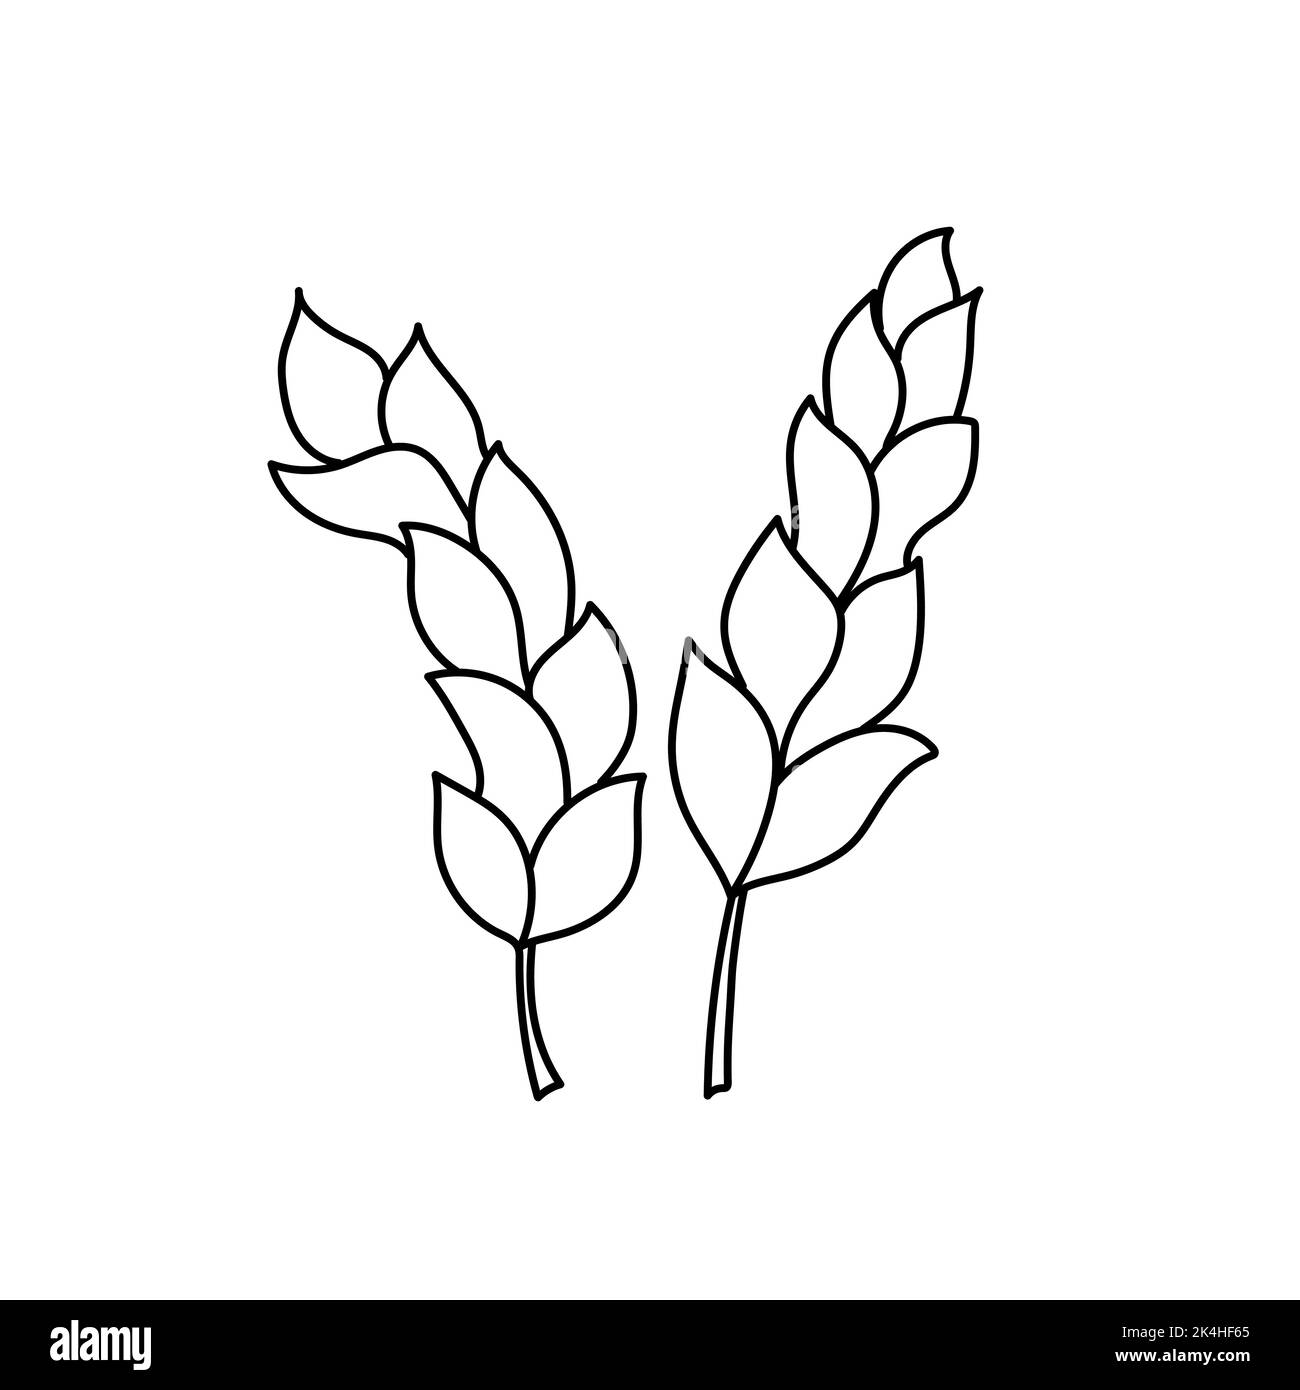 Zwei Ähren von Weizen-Symbol in Umriss Cartoon-Stil auf weiß. Schwarz-Weiß einfache handgezeichnete Zeichnung Stock Vektor